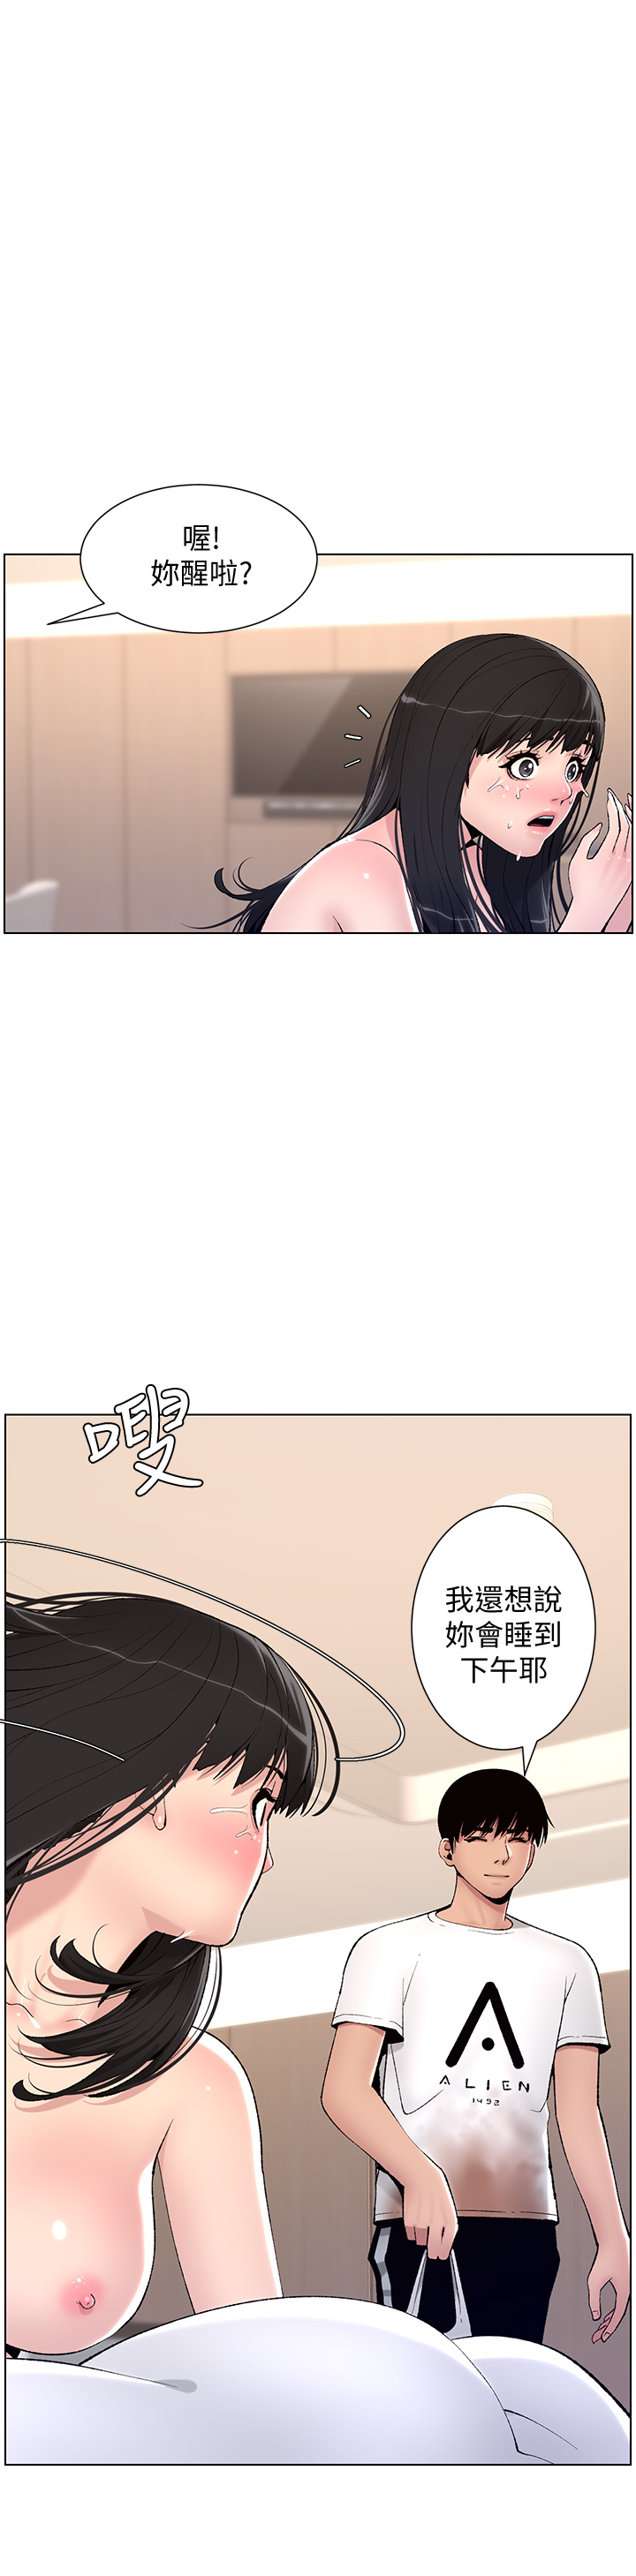 韩国污漫画 帝王App 第11话 少女的第一次高潮 25